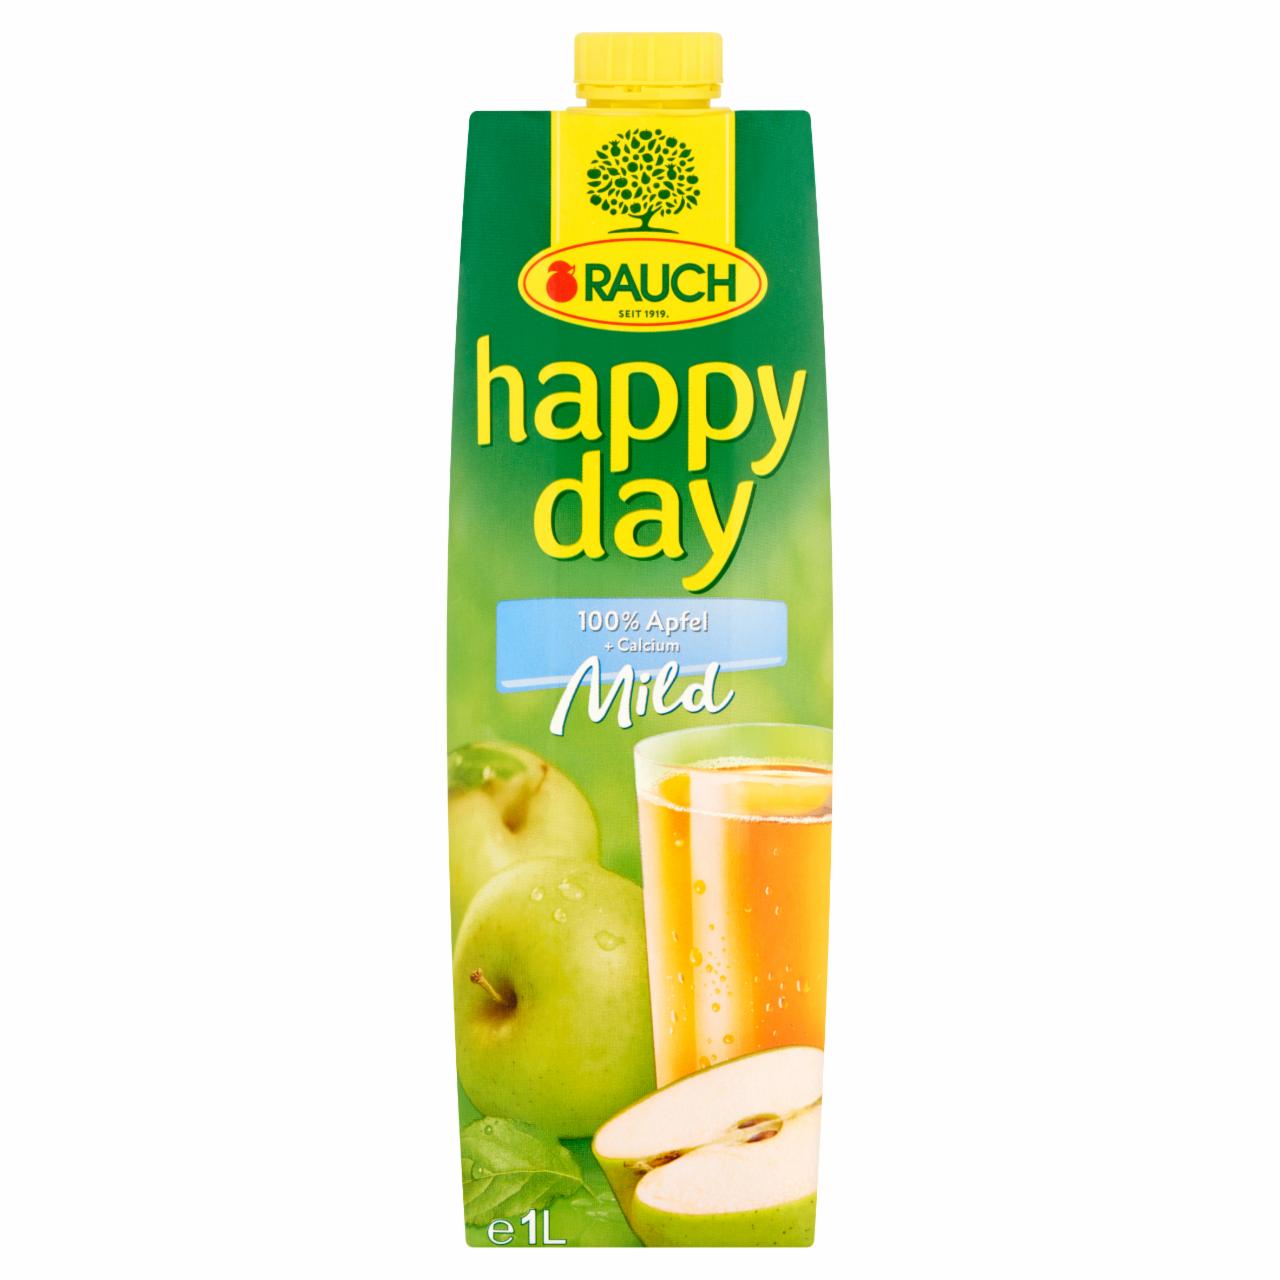 Képek - Rauch Happy Day Mild 100% almalé sűrítményből kalciummal 1 l